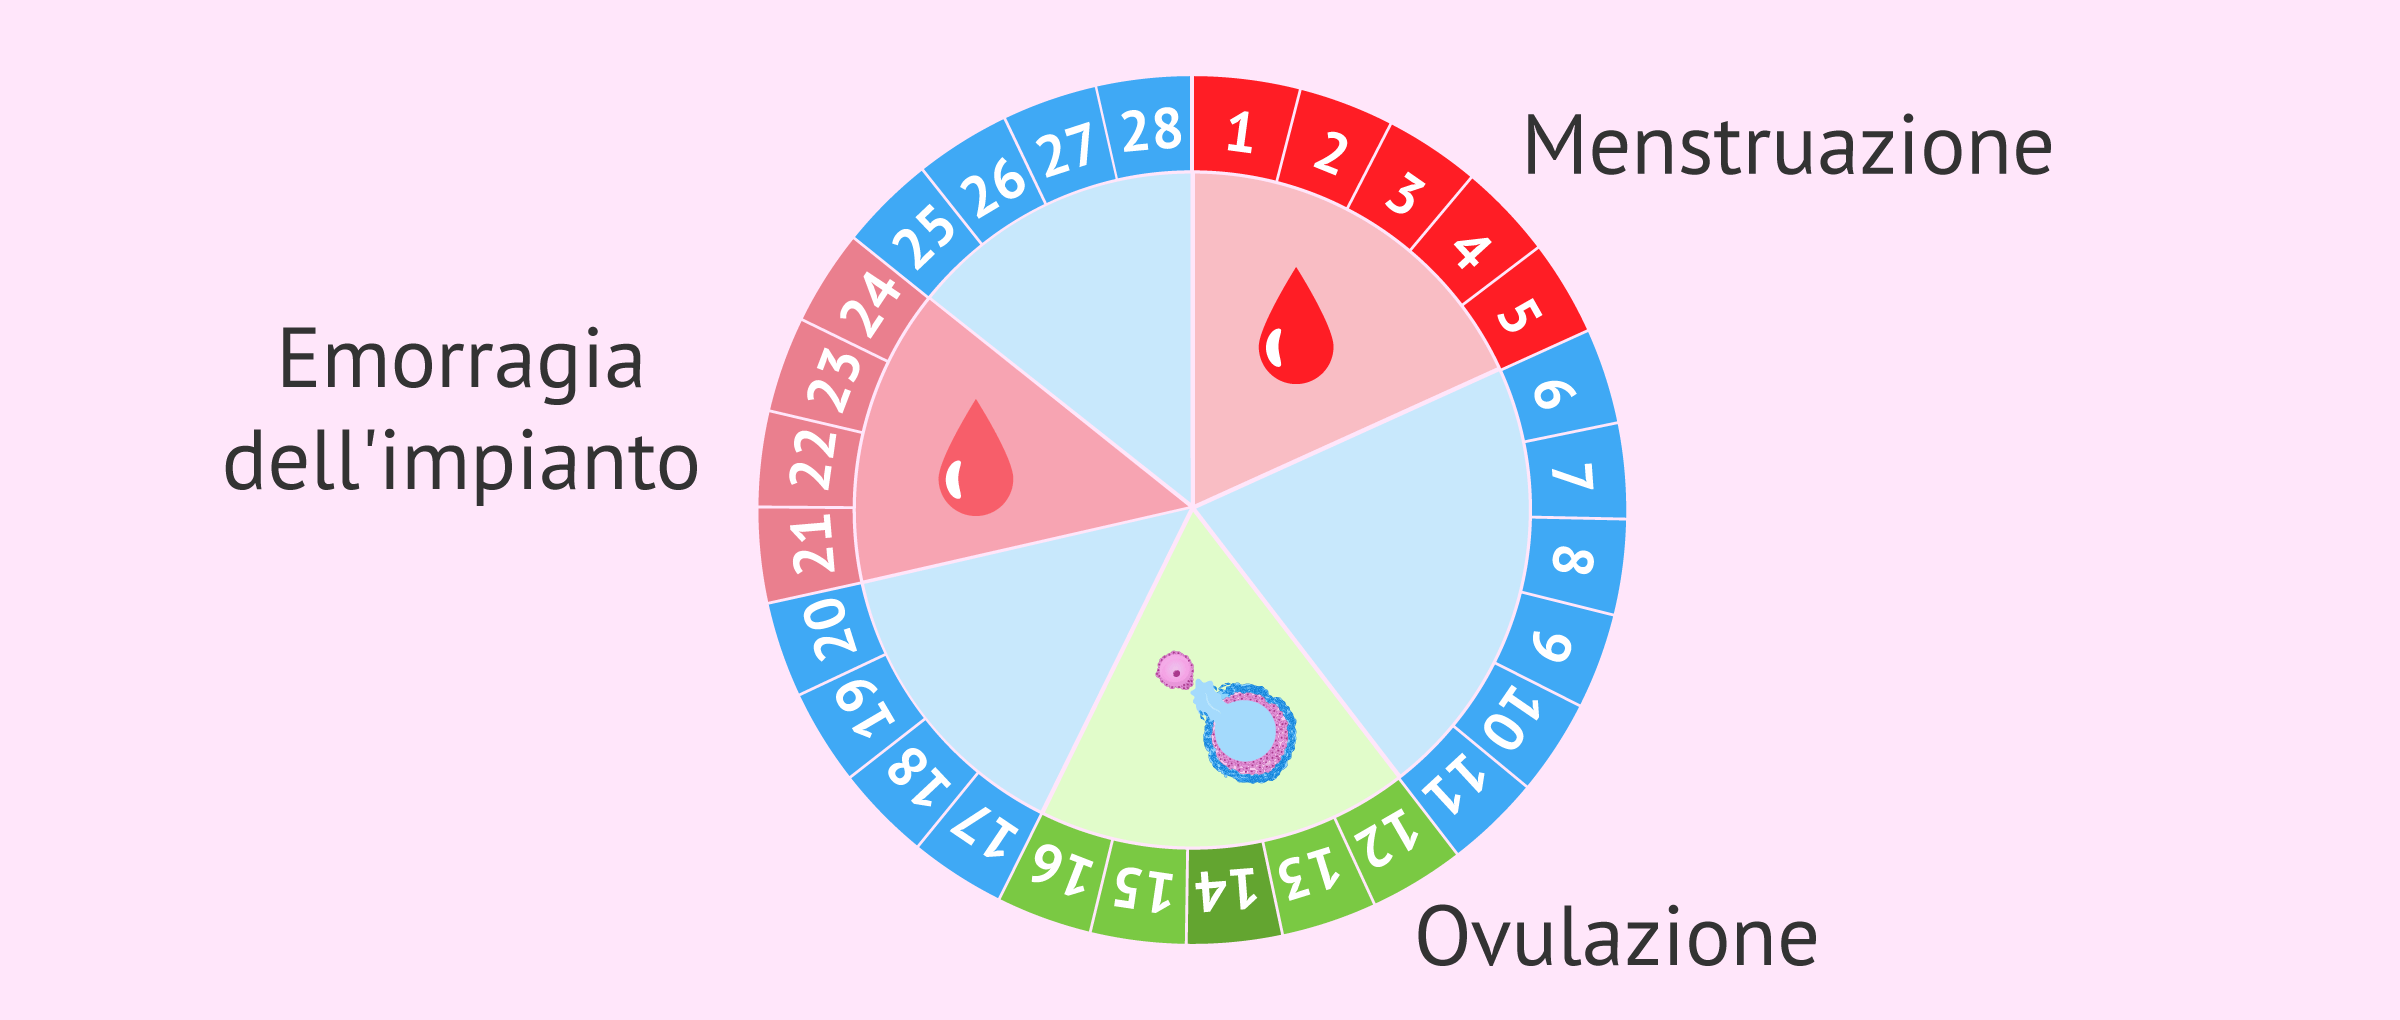 Emorragia dell'impianto nel ciclo mestruale